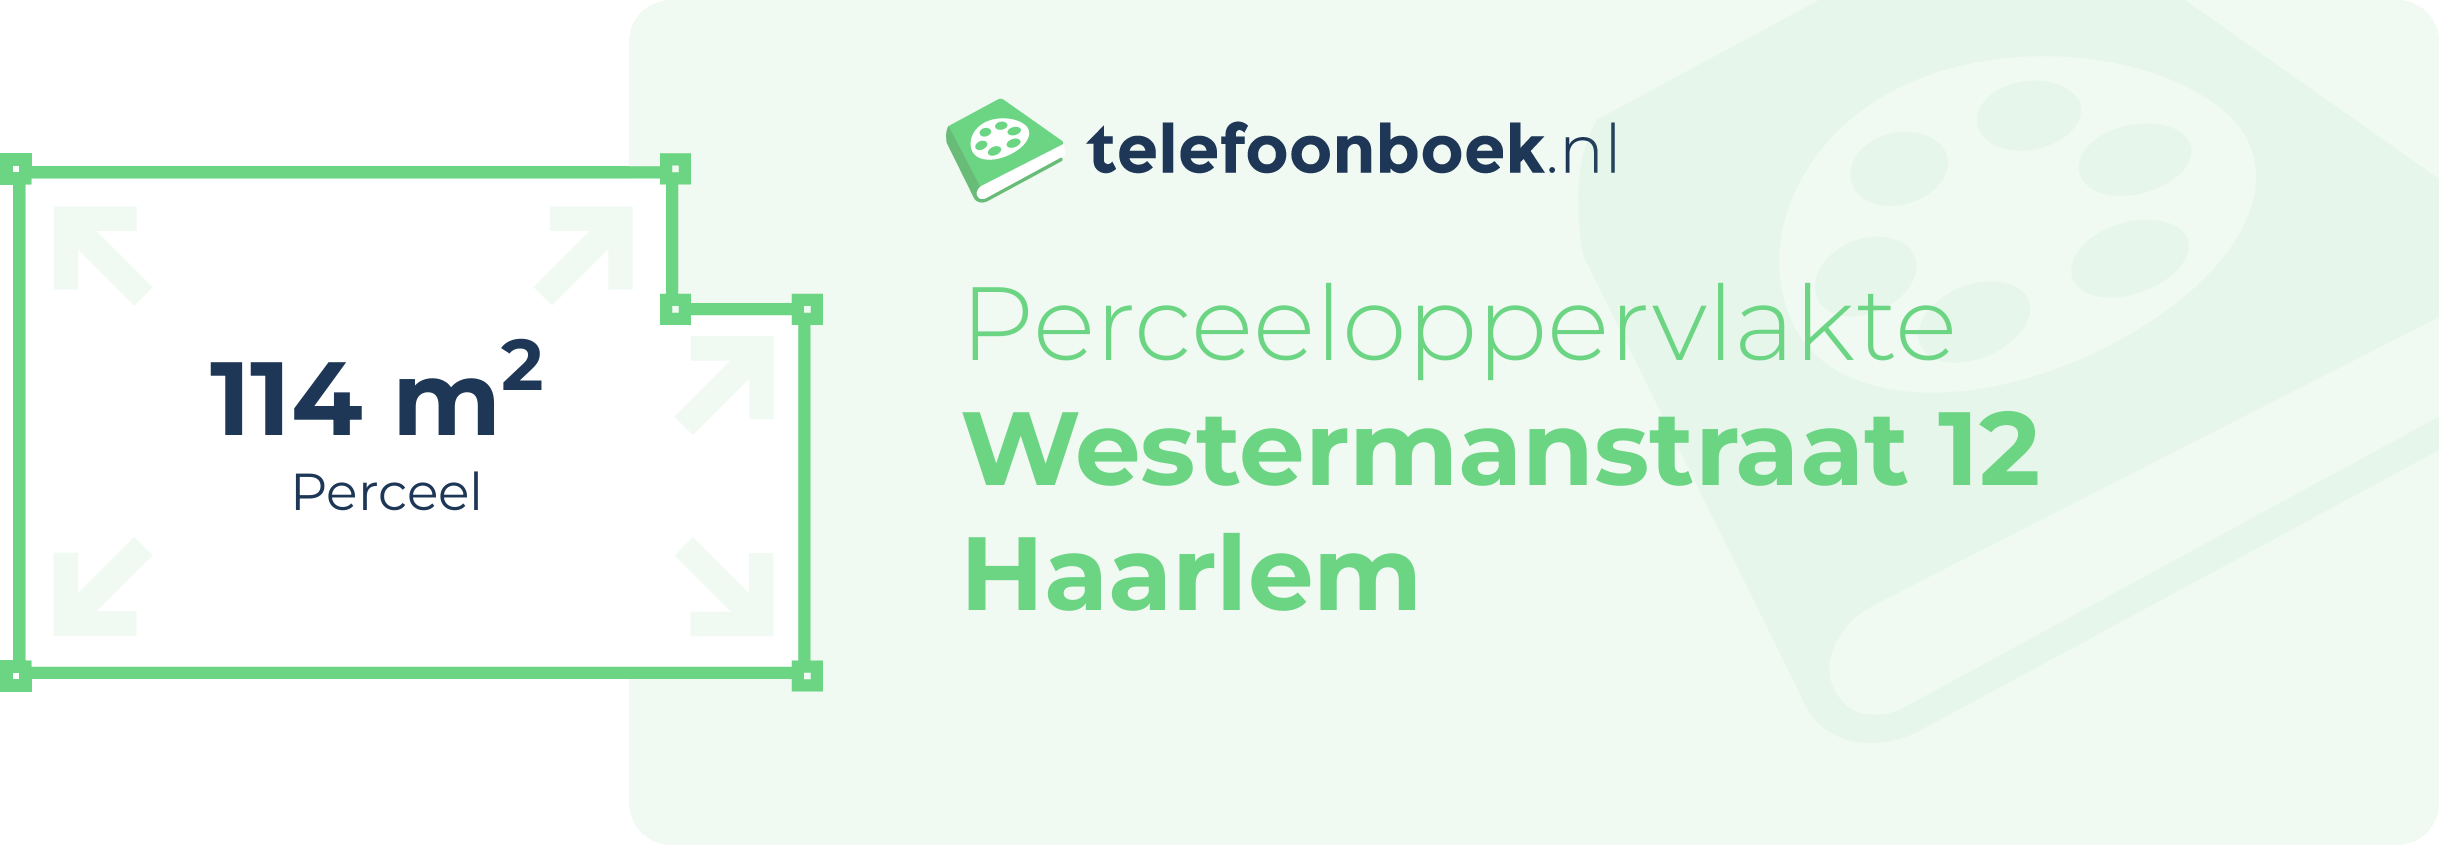 Perceeloppervlakte Westermanstraat 12 Haarlem